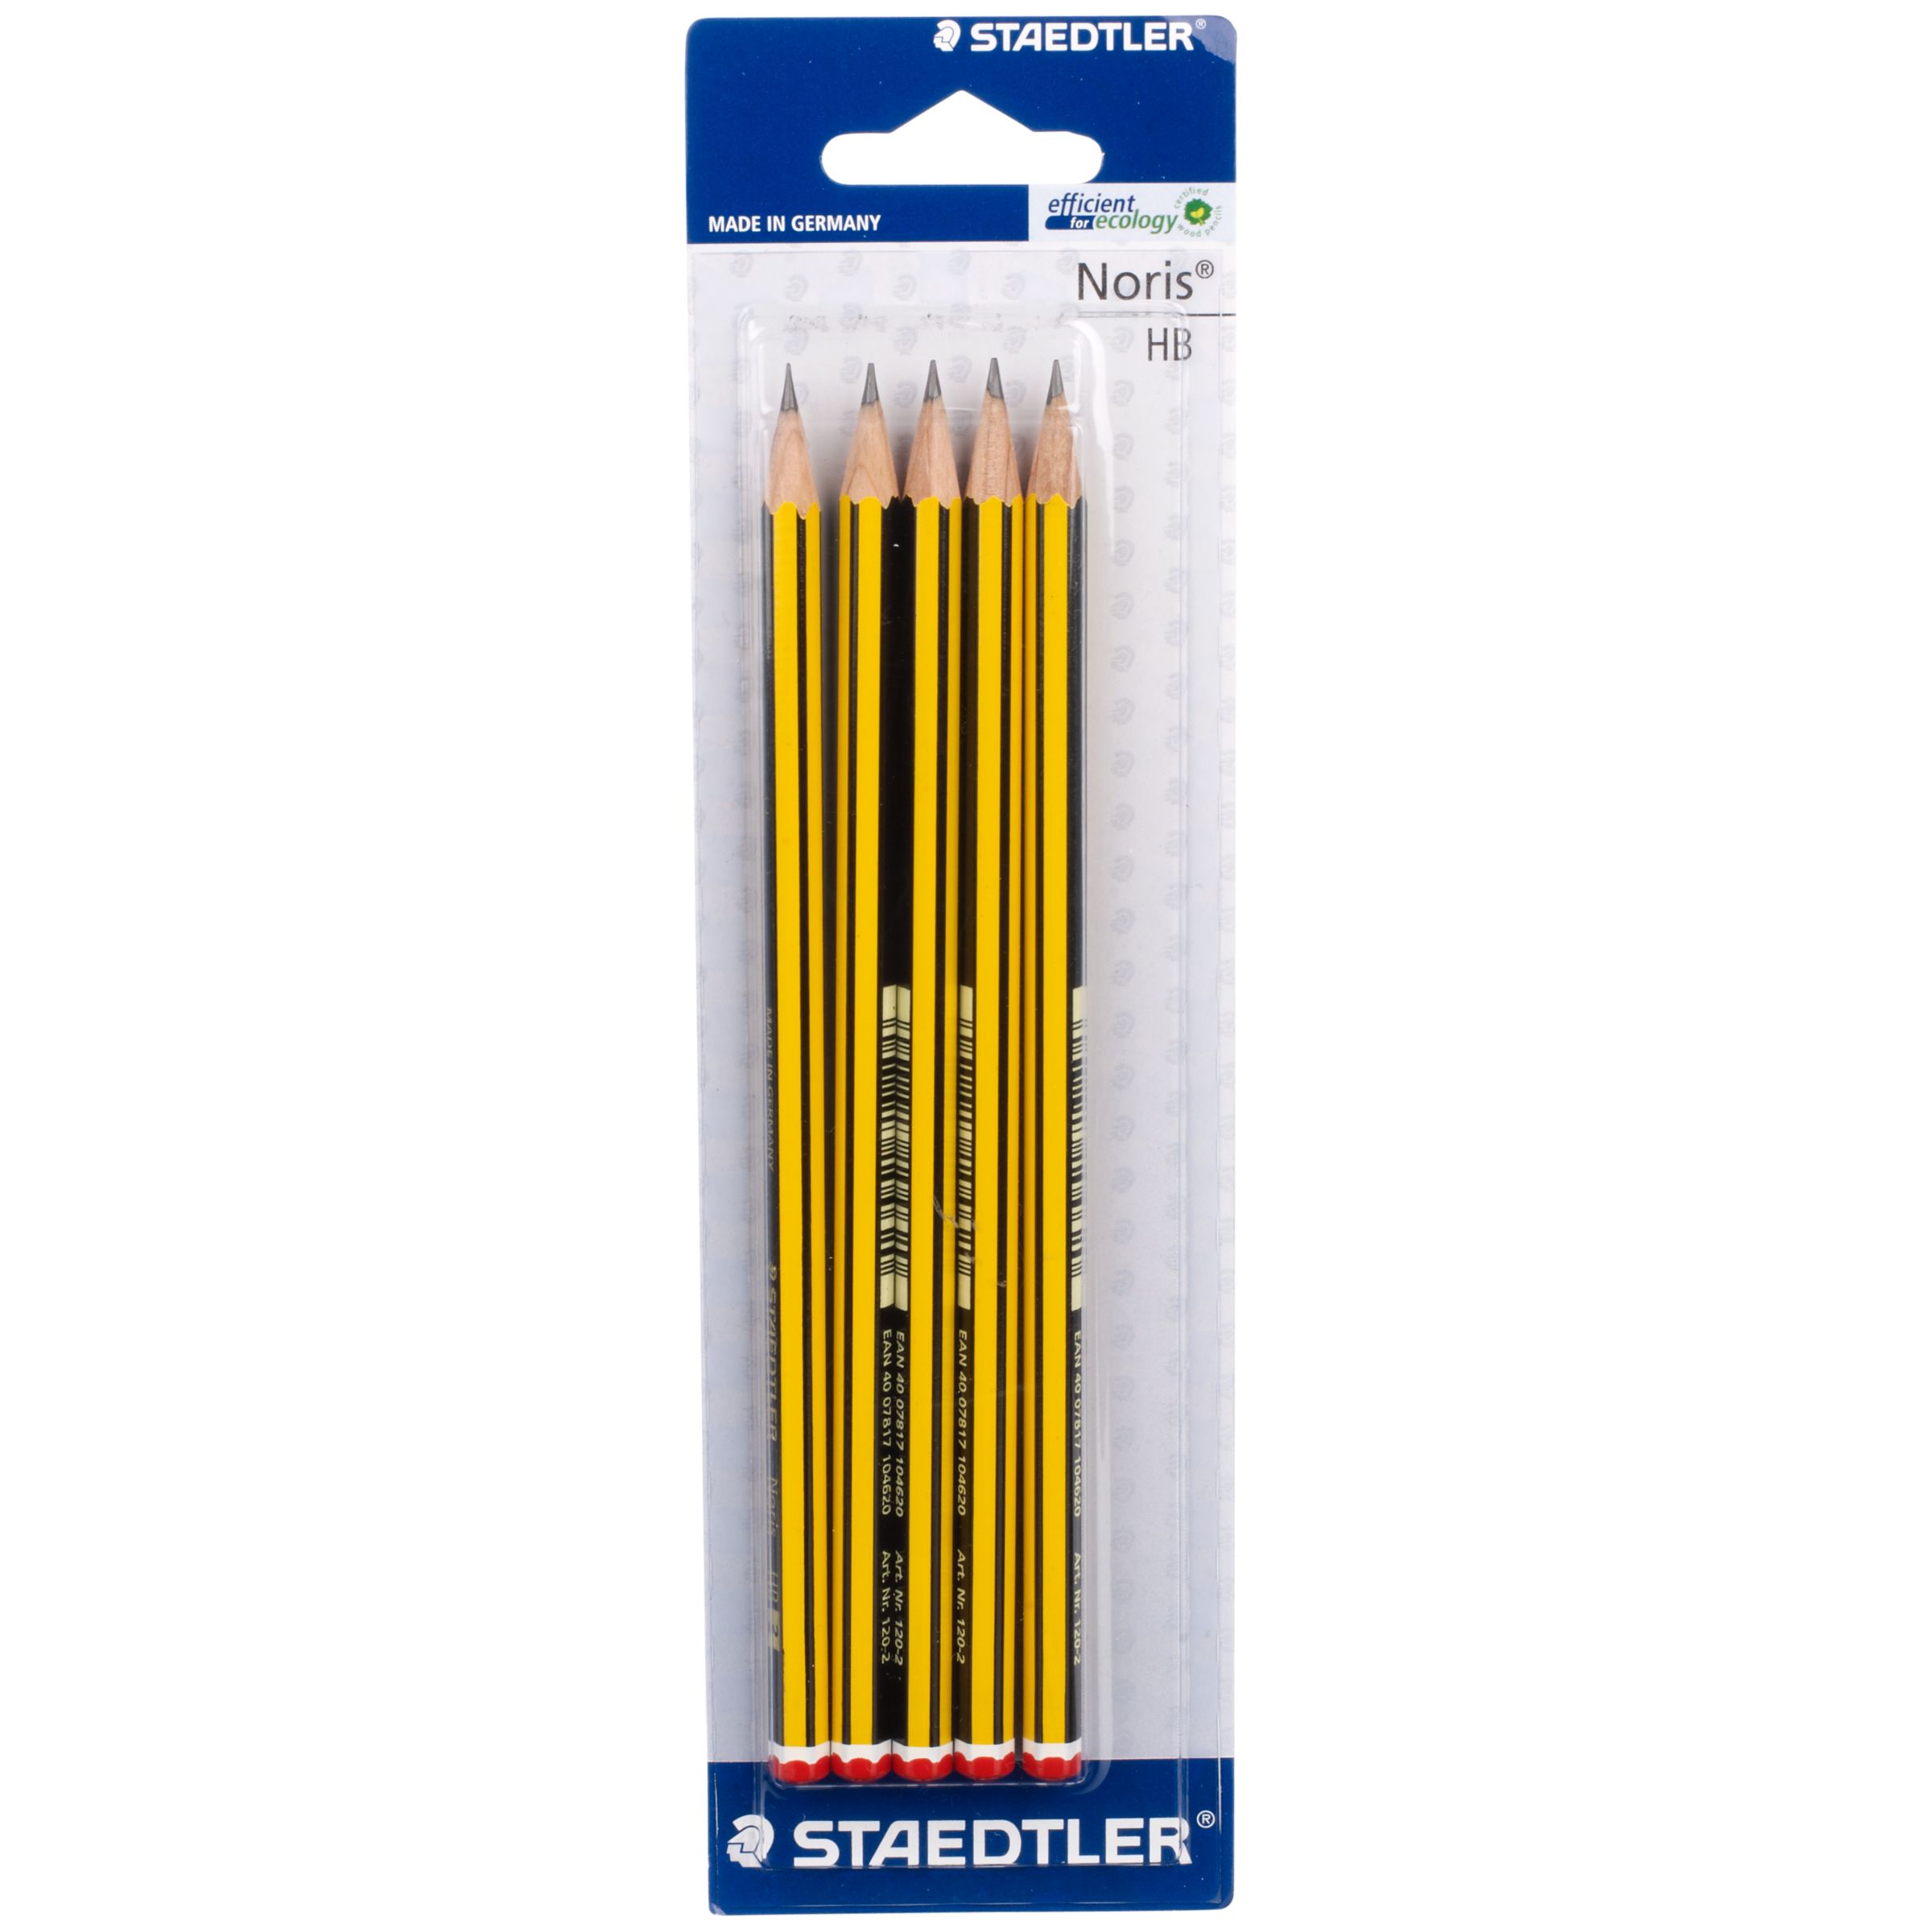 Staedtler Noris HB Pencils, Pack of 5 170145